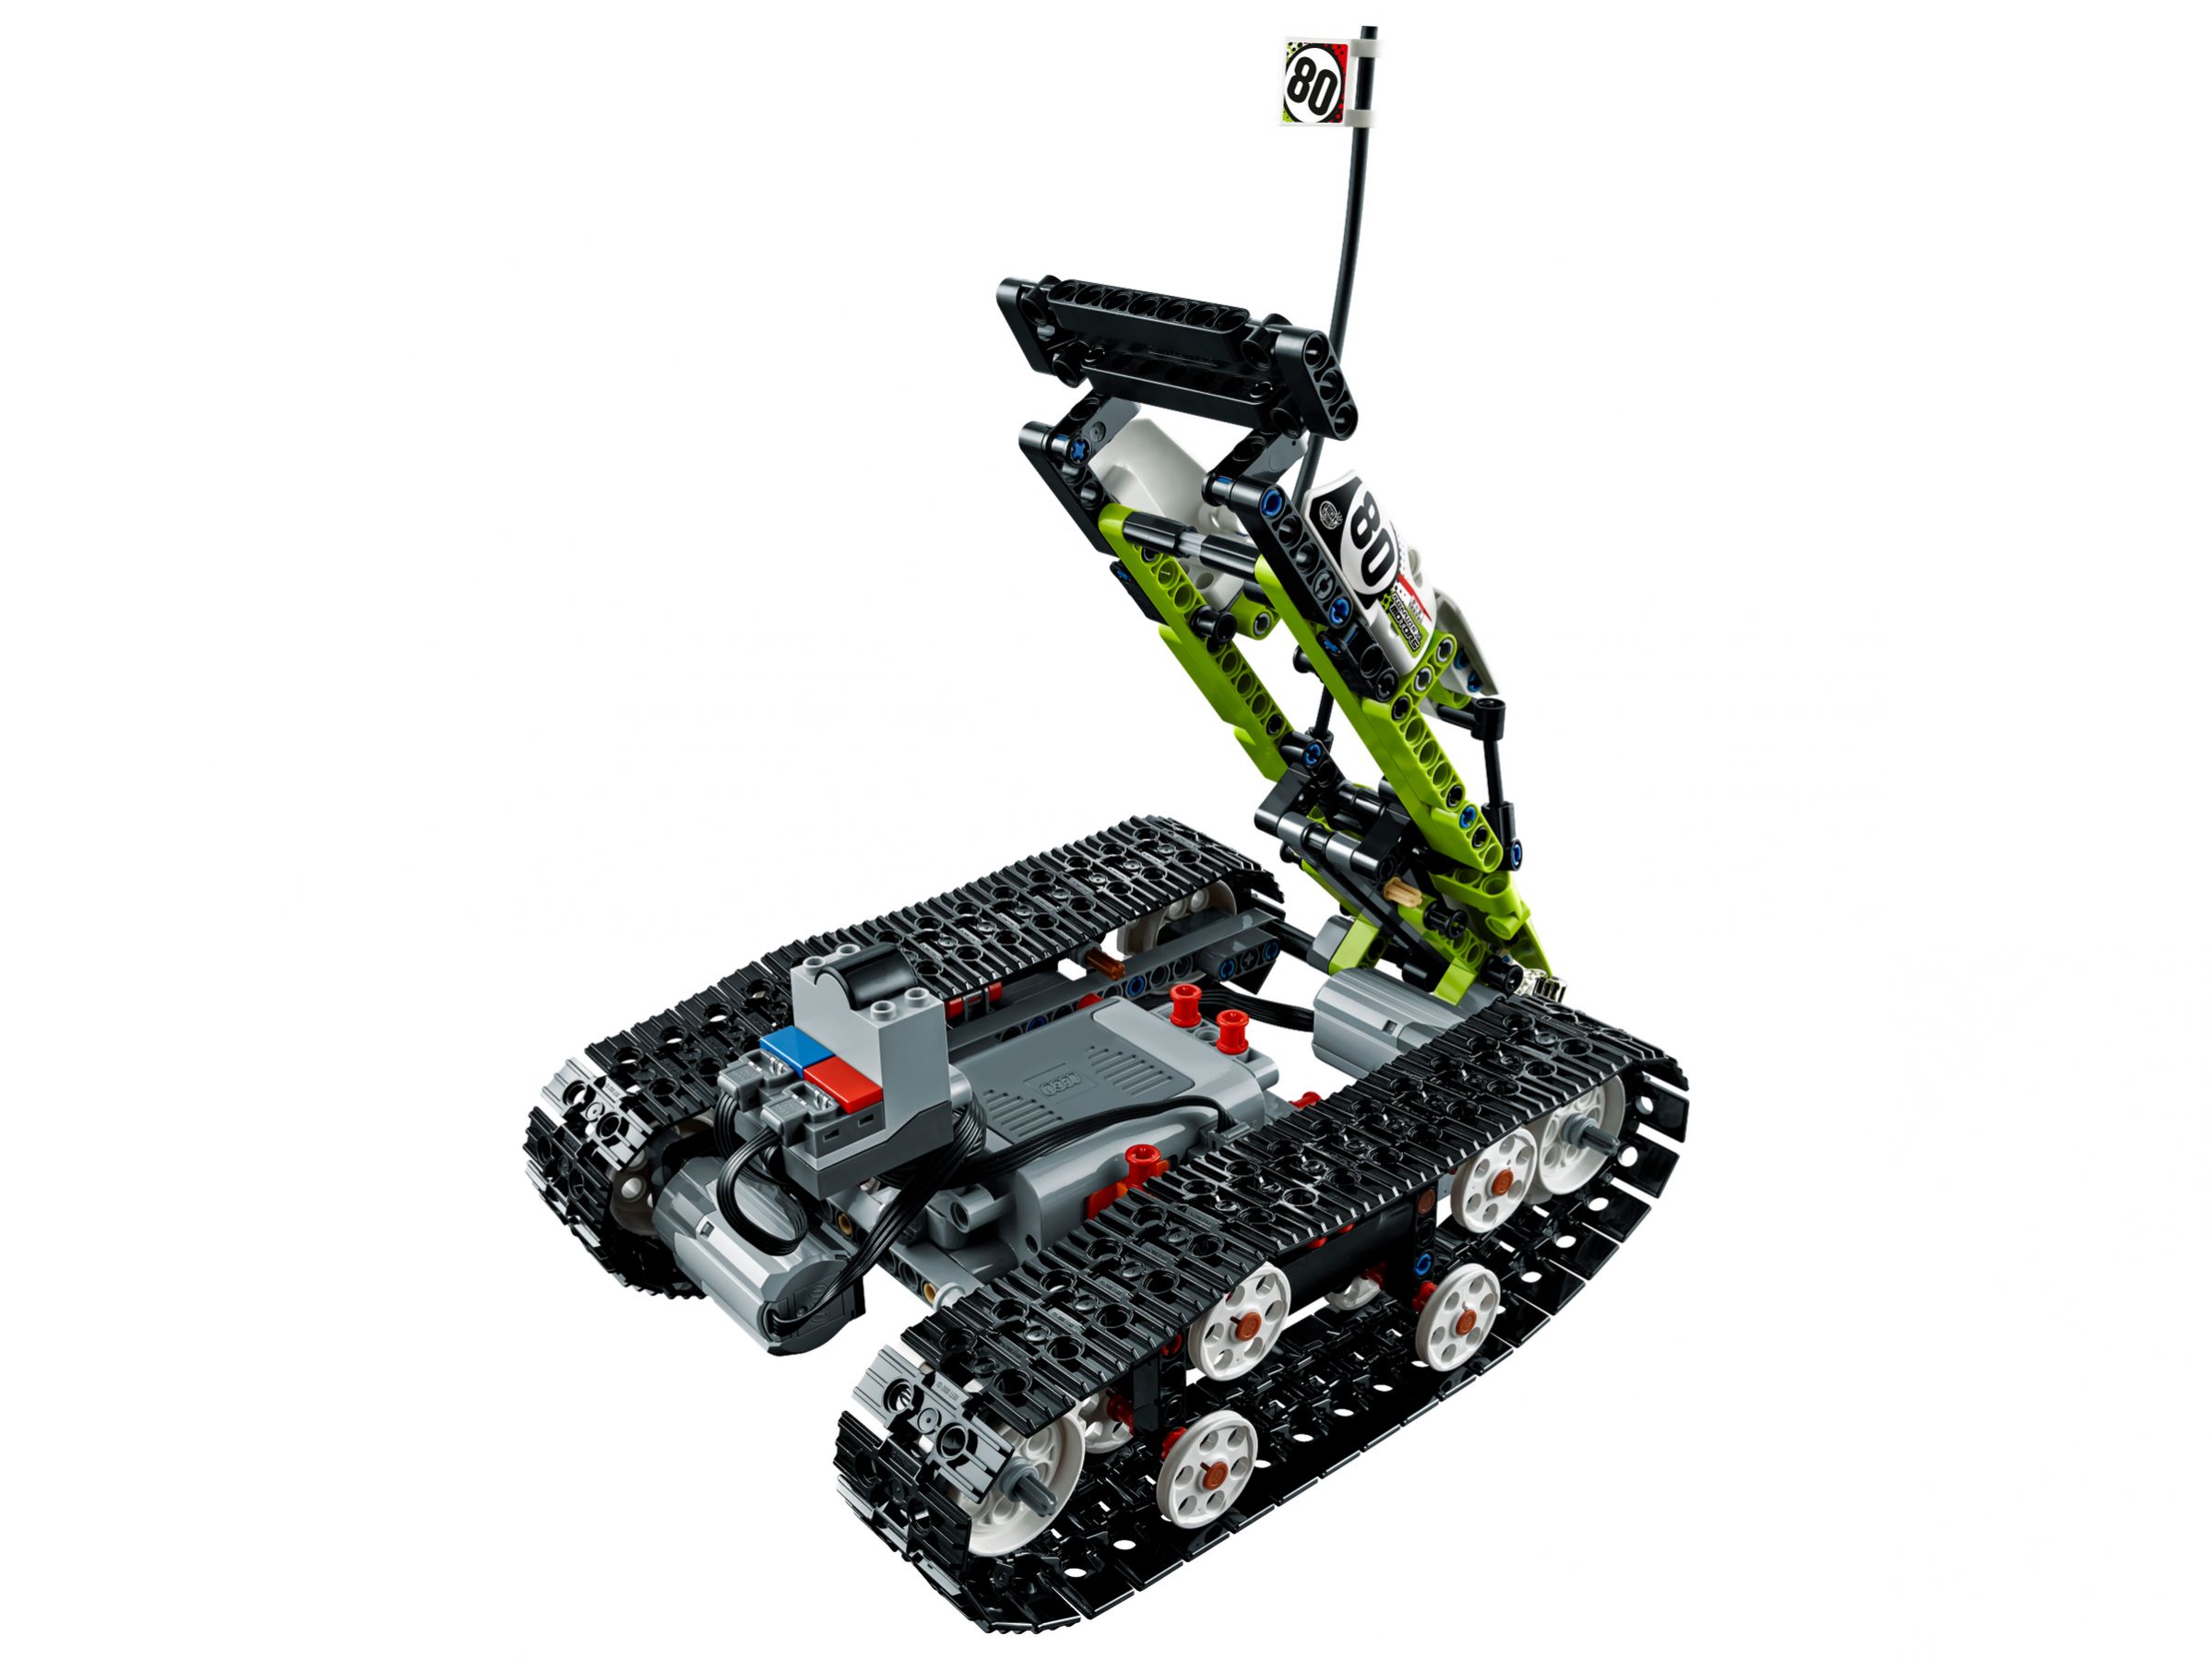 LEGO Technic 42065 Ferngesteuerter Tracked Racer LEGO_42065_alt4.jpg